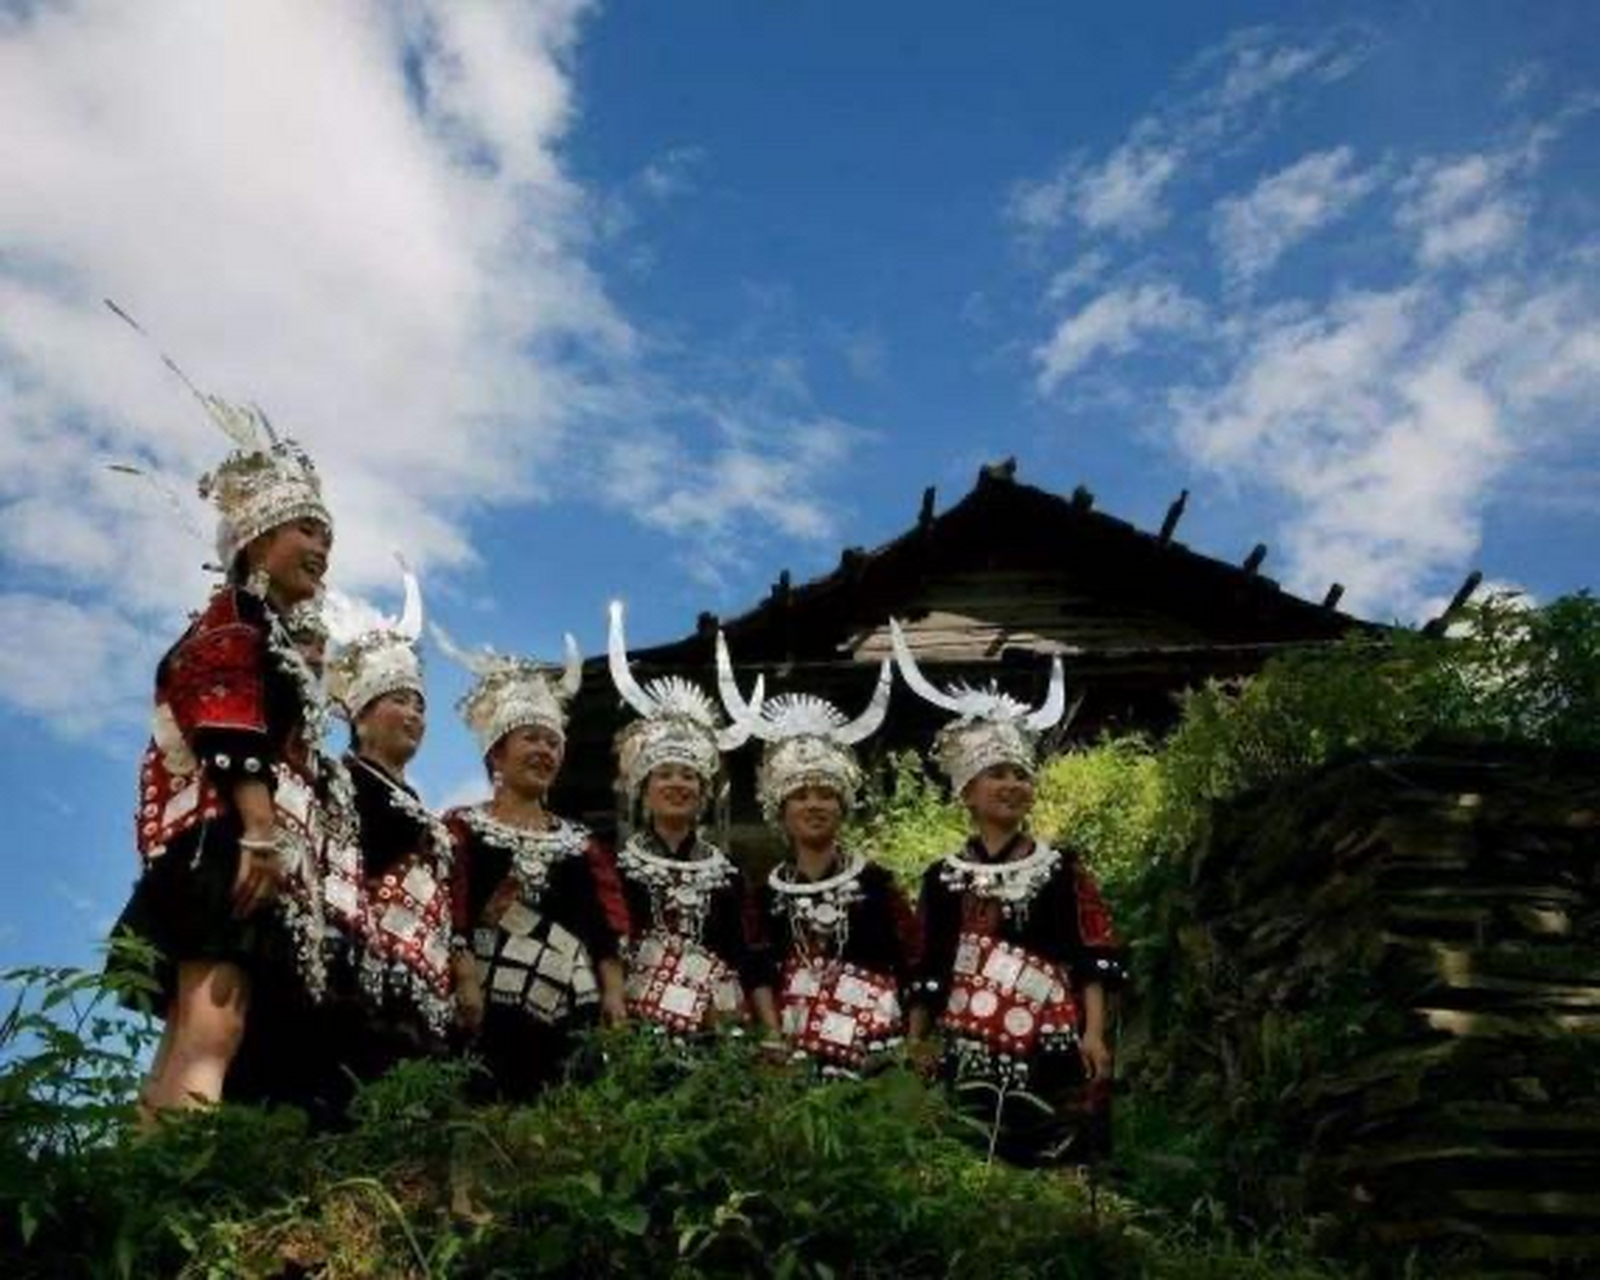 苗族飞歌,苗语称为hxak yangt,是苗族歌曲的一种,流行于贵州台江